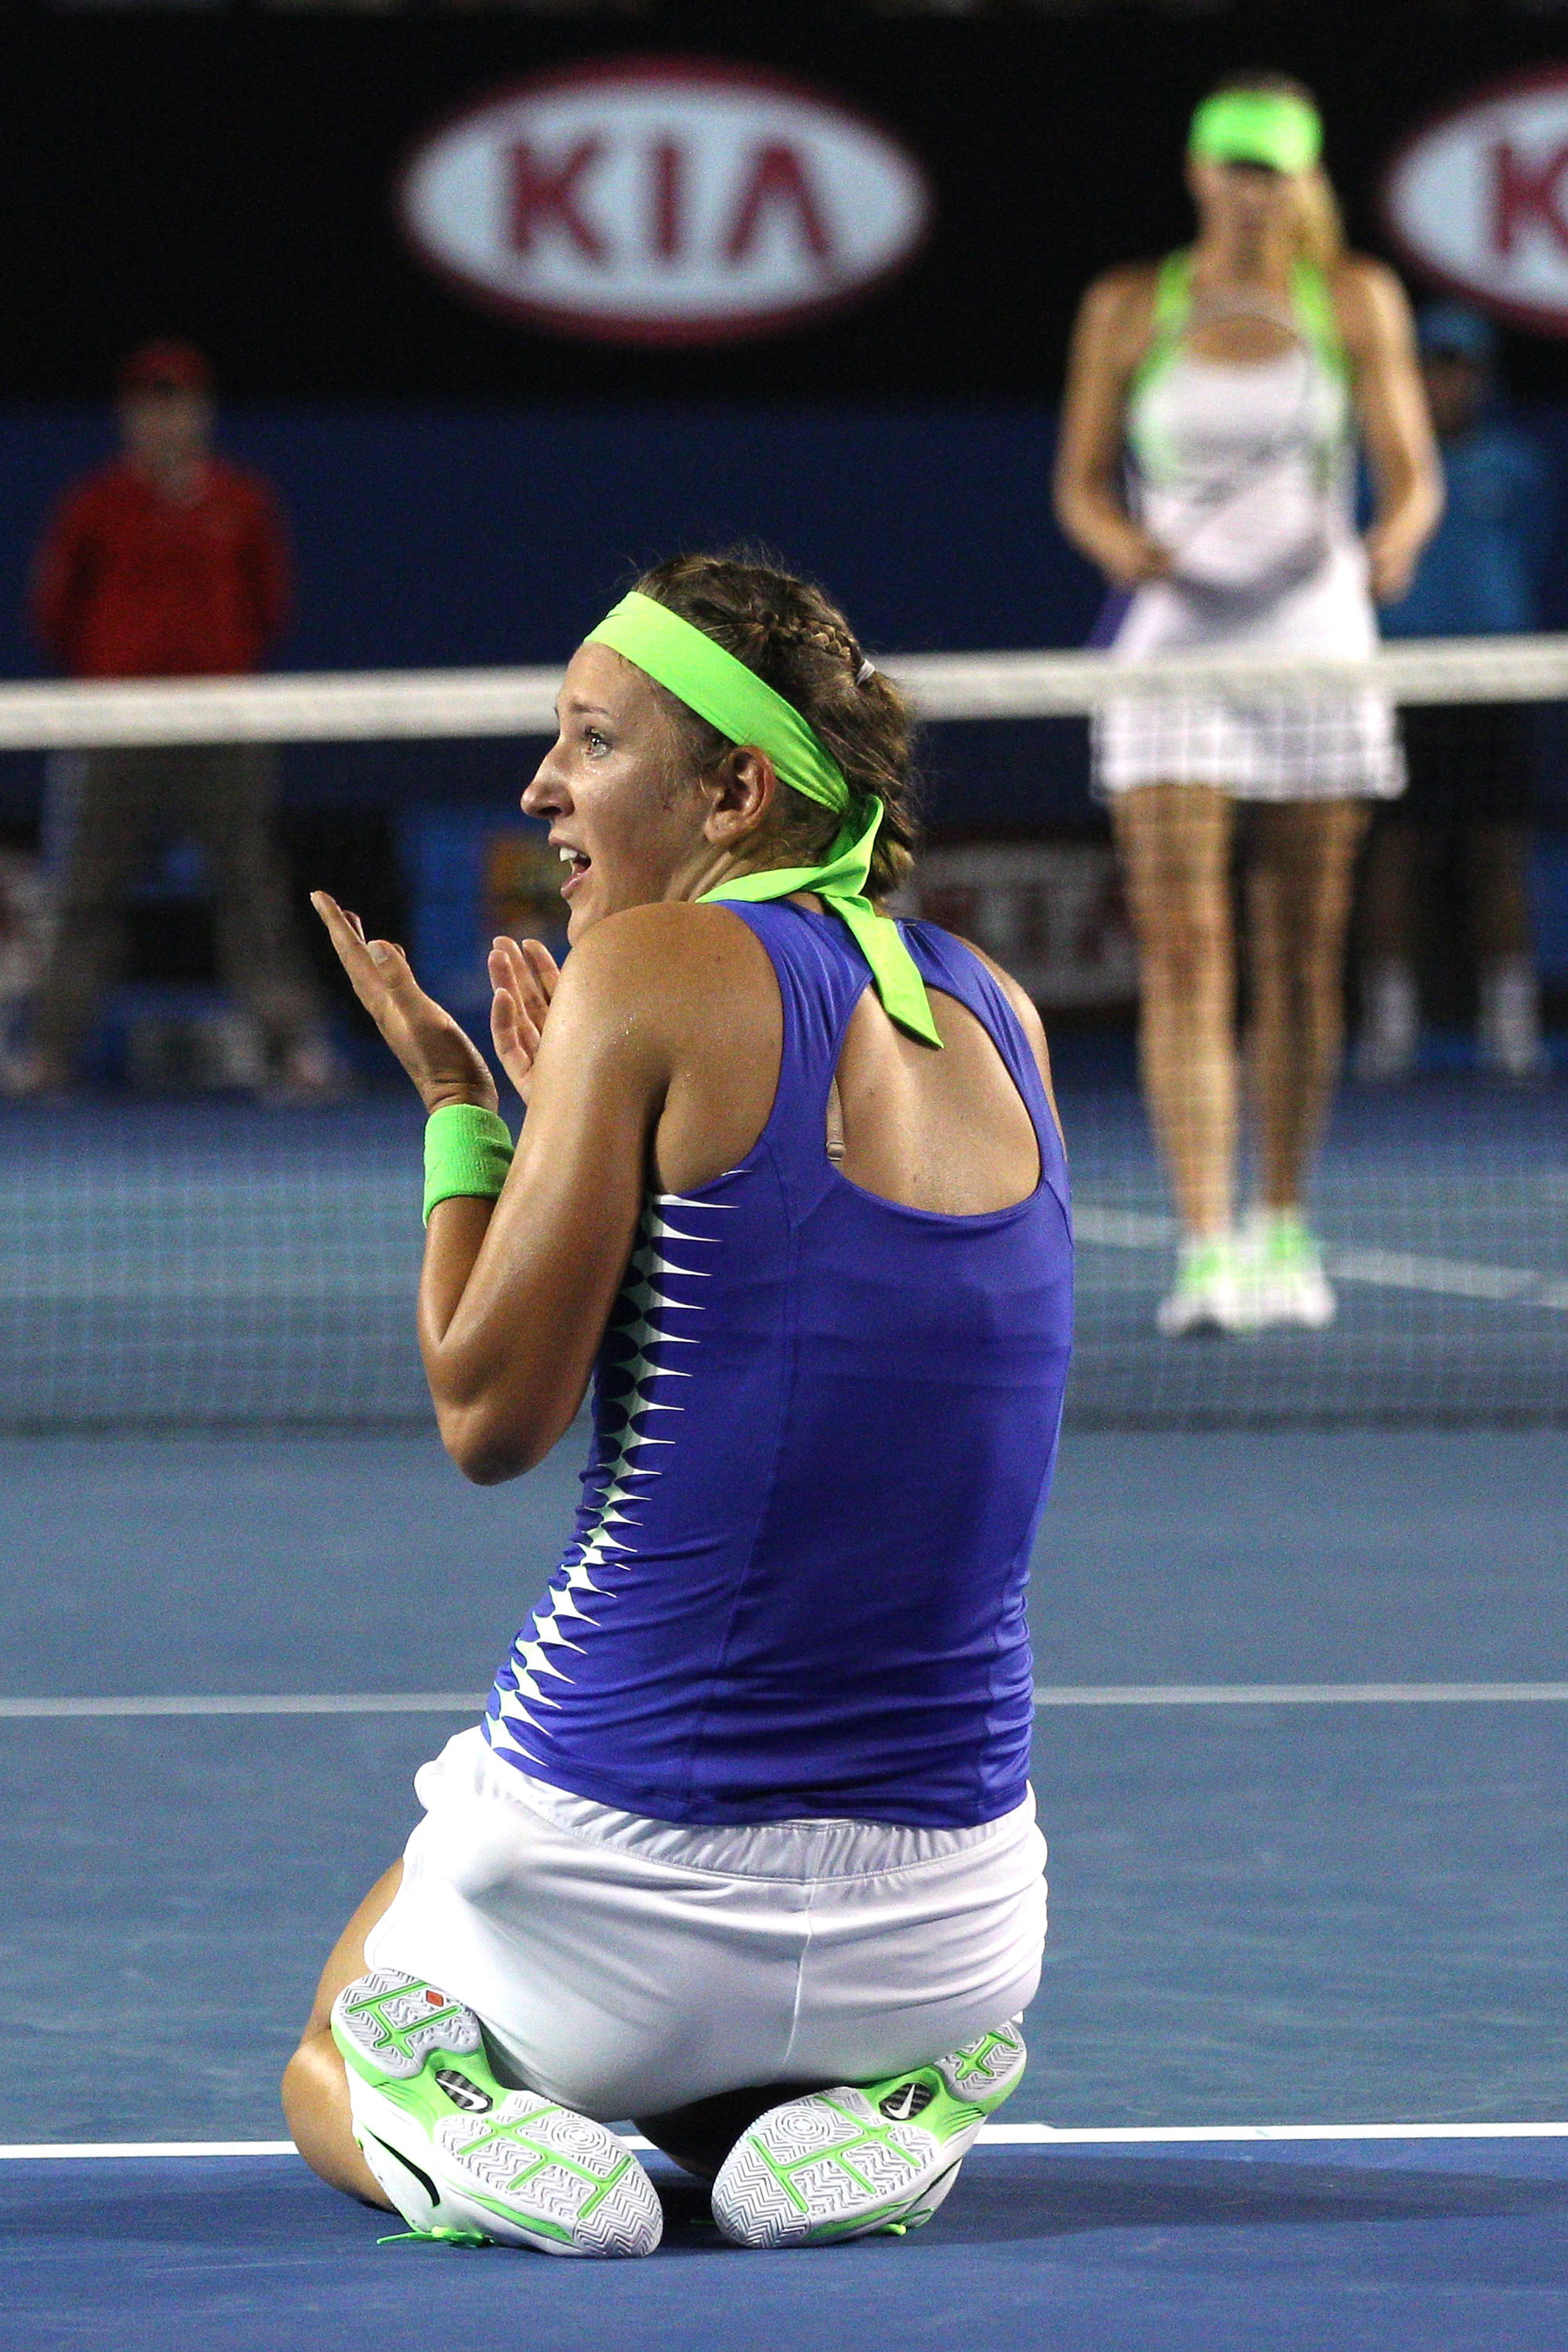 Victoria Azarenka vann sin första Grand Slam och tog över epitetet som världsetta från Caroline Wozniacki. Men snackisen handlade om den "stön-duell" som utspelade sig i finalen mellan henne och ryskan Maria Sjarapova.